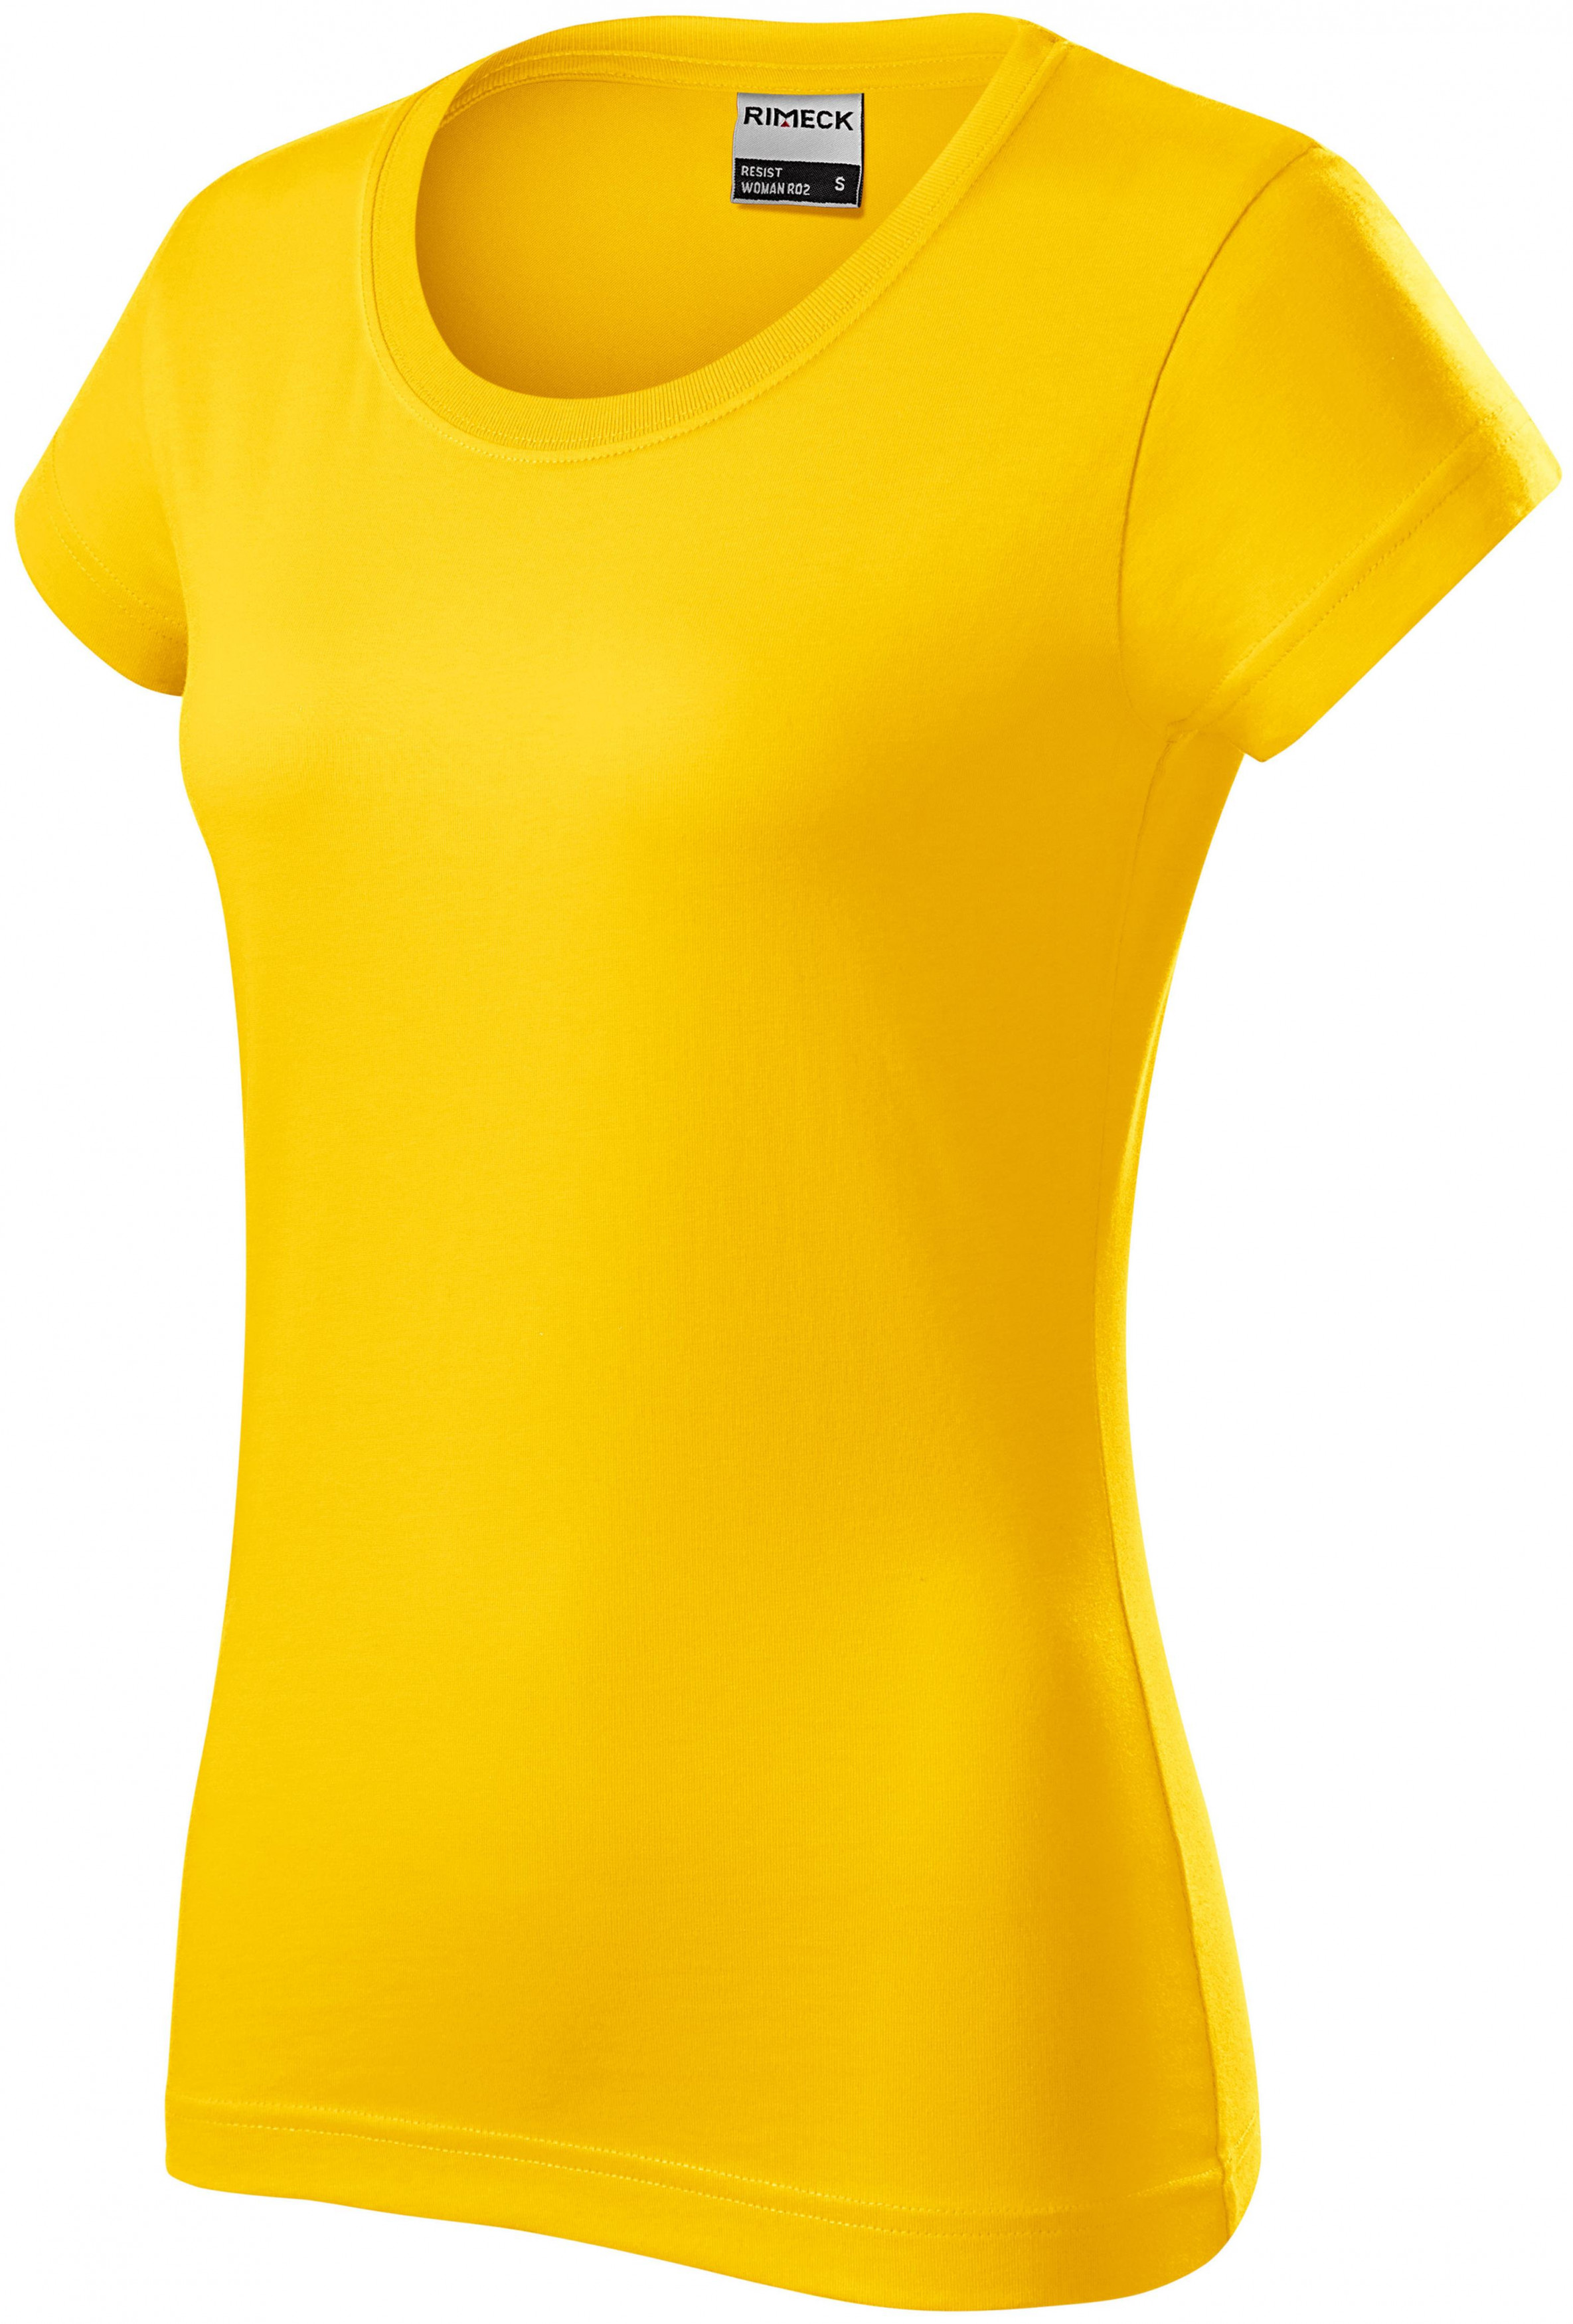 Odolné dámske tričko, žltá, XL